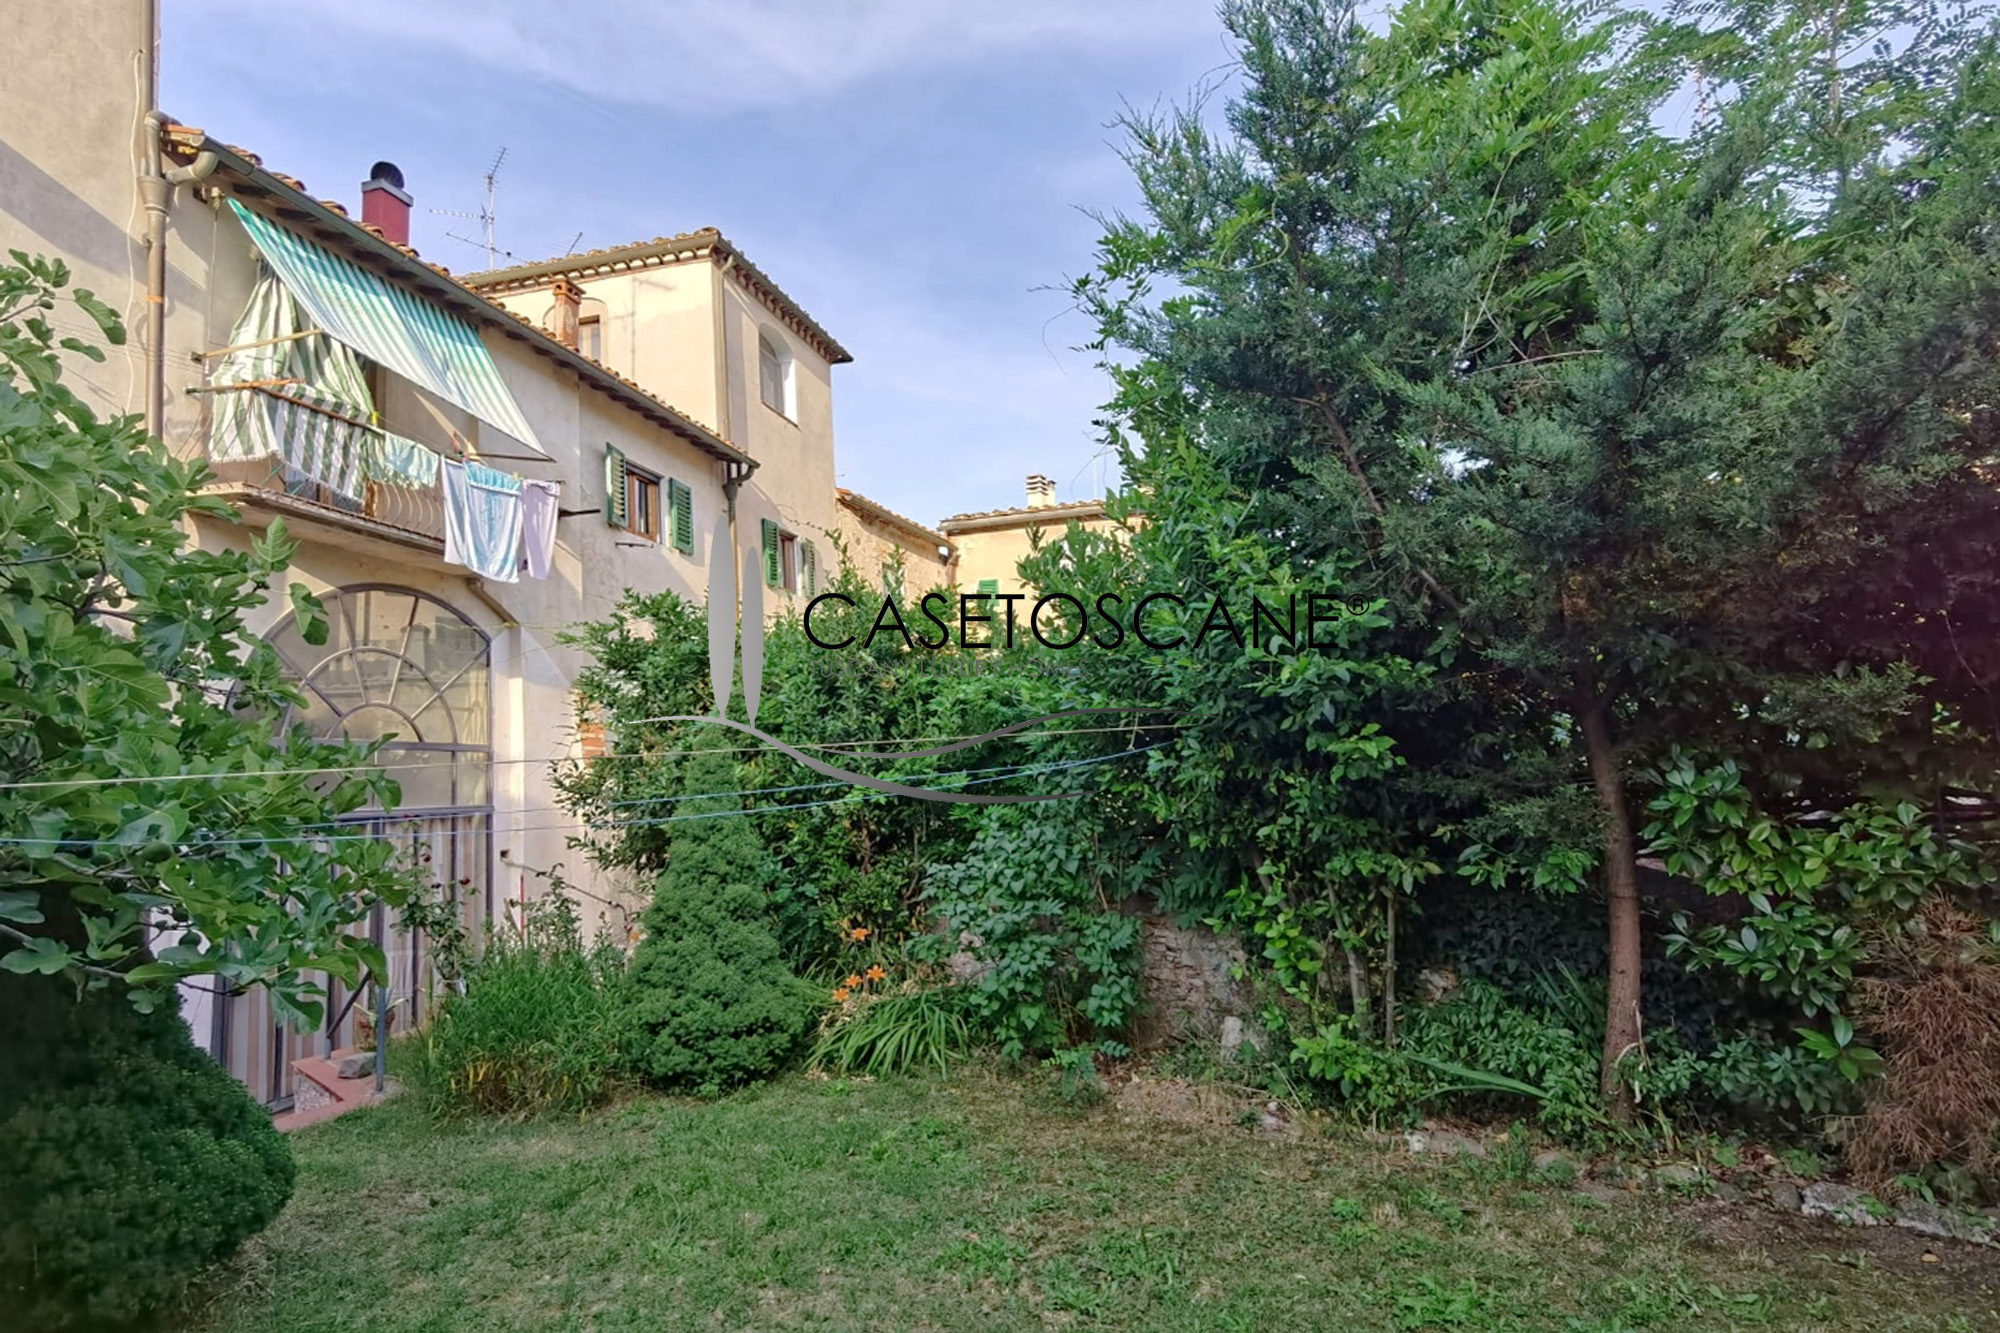 3181 - Appartamento di mq.110 al P1° in palazzo del 1500, con bellissimo giardino di mq.120 nel centro storico di Bucine (AR).